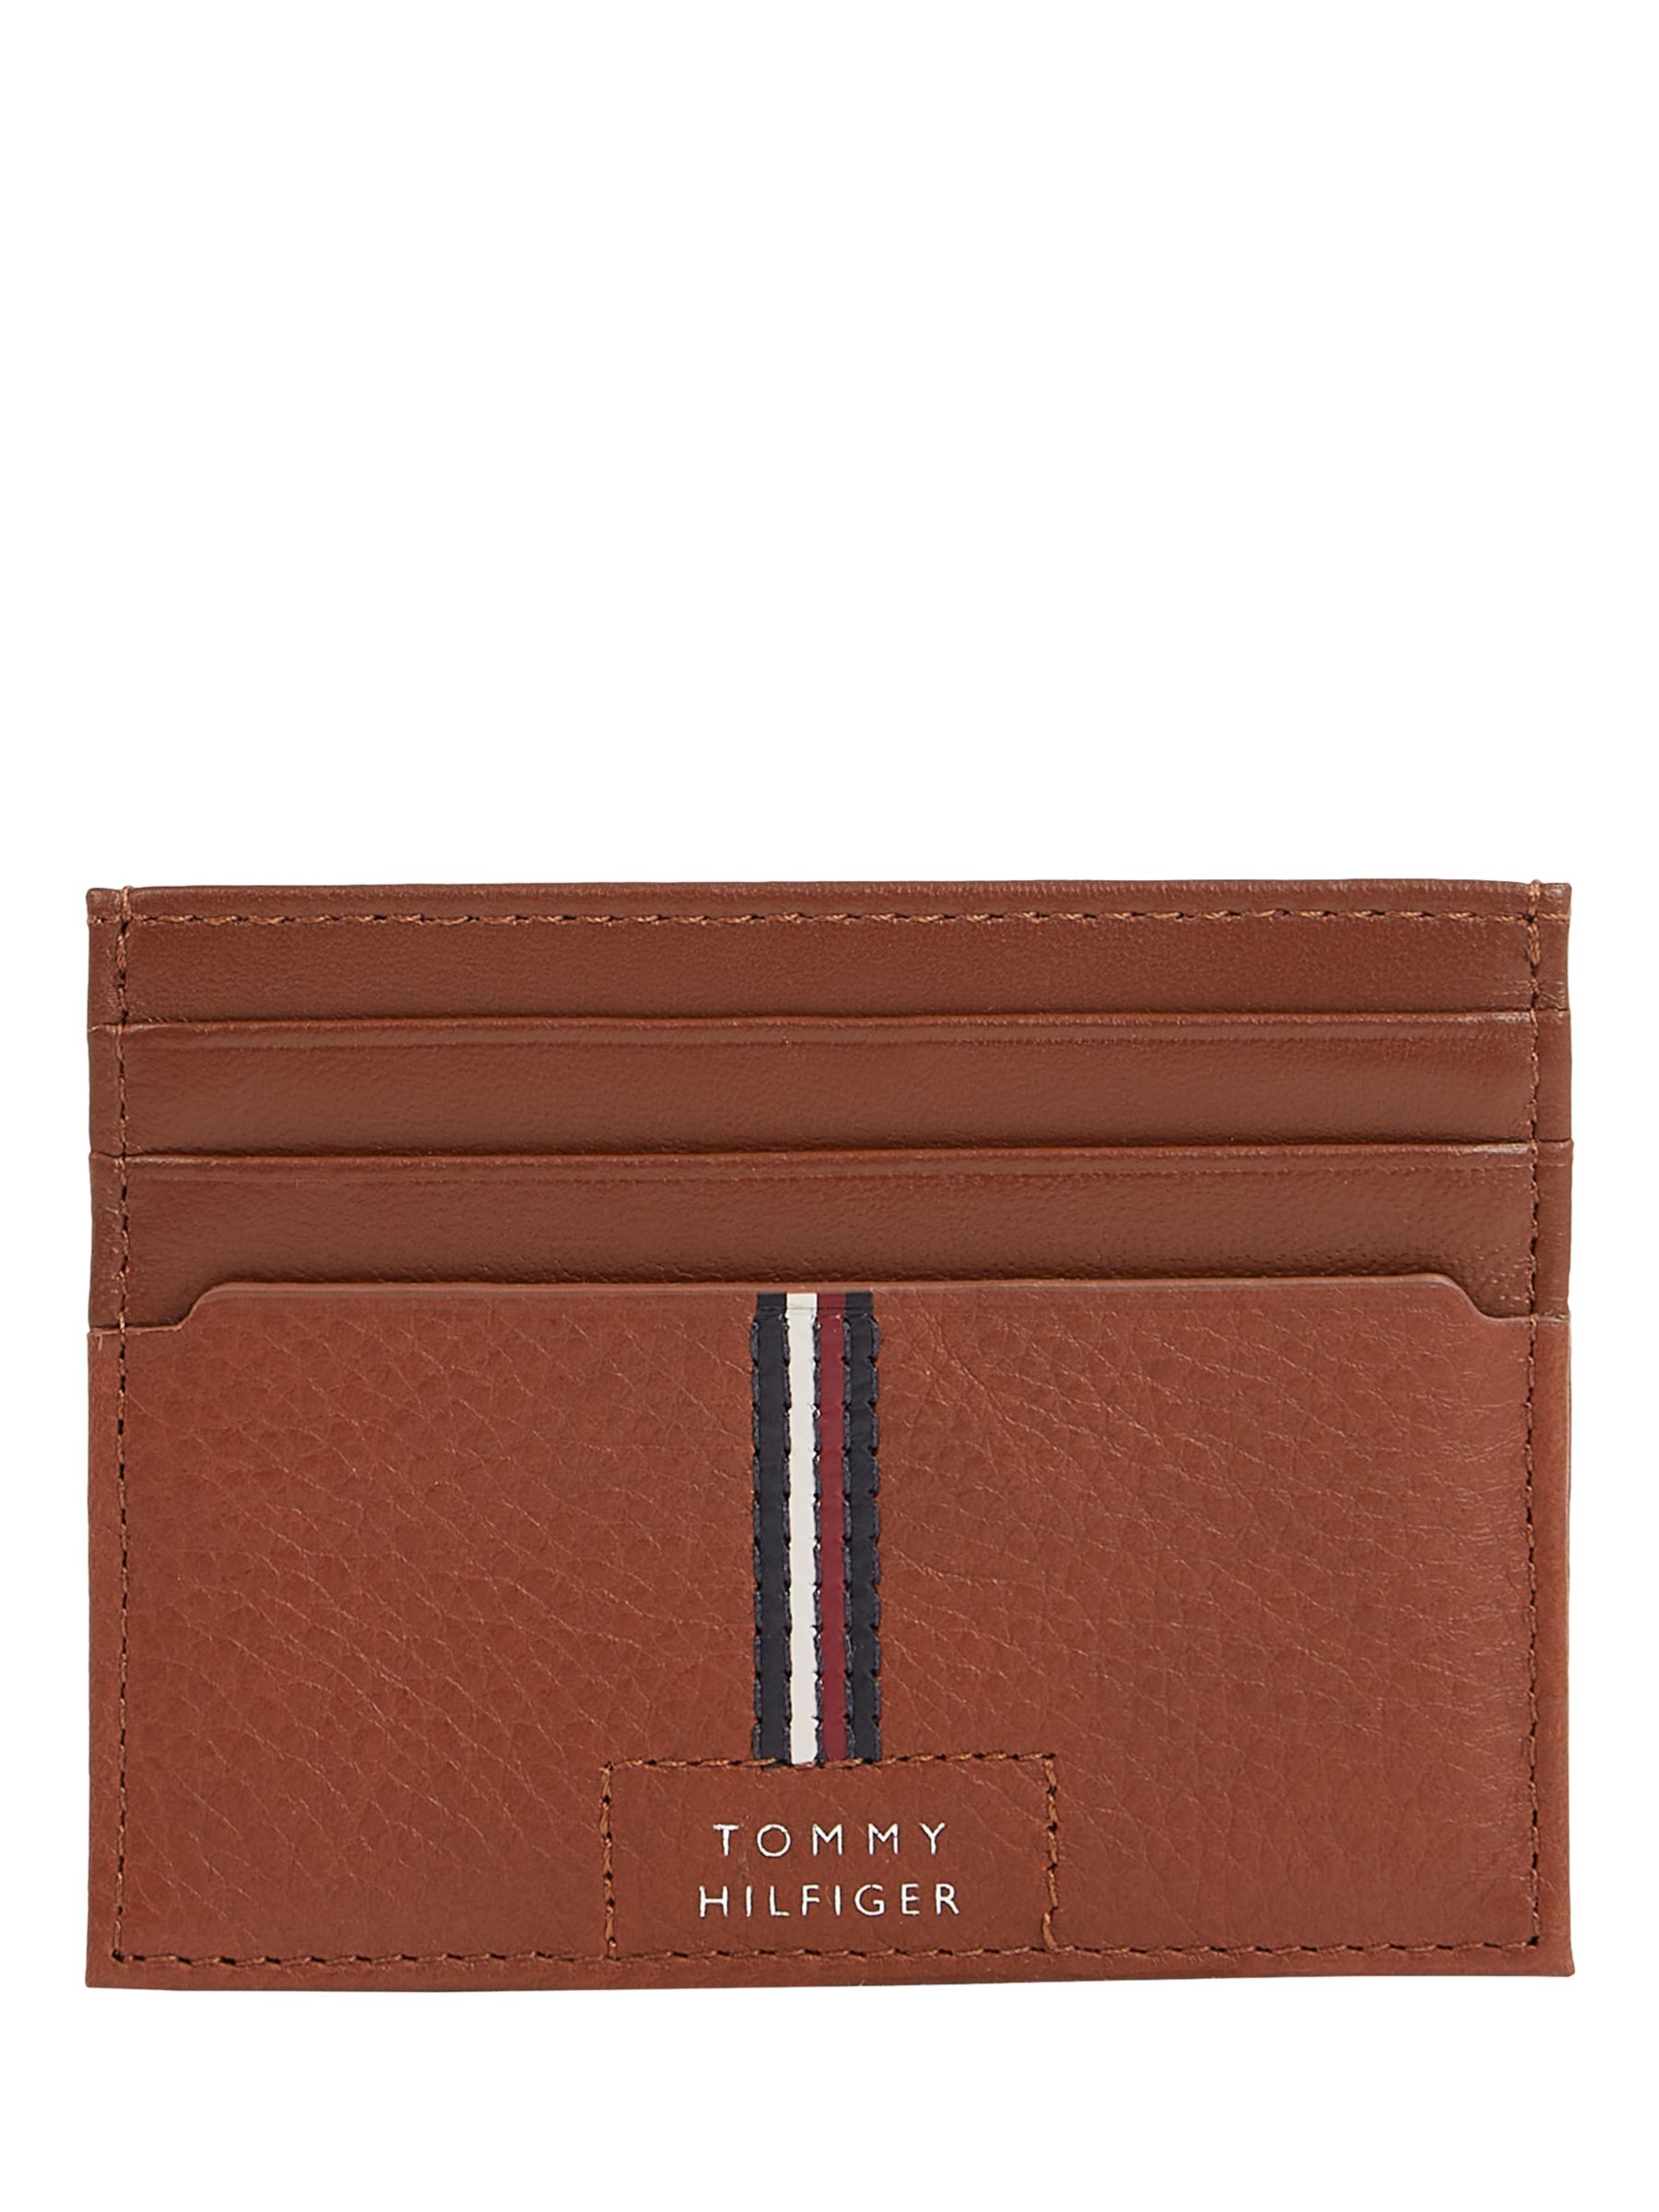 Tommy Hilfiger Premium Leather Card Holder, Brown Dark, One Size